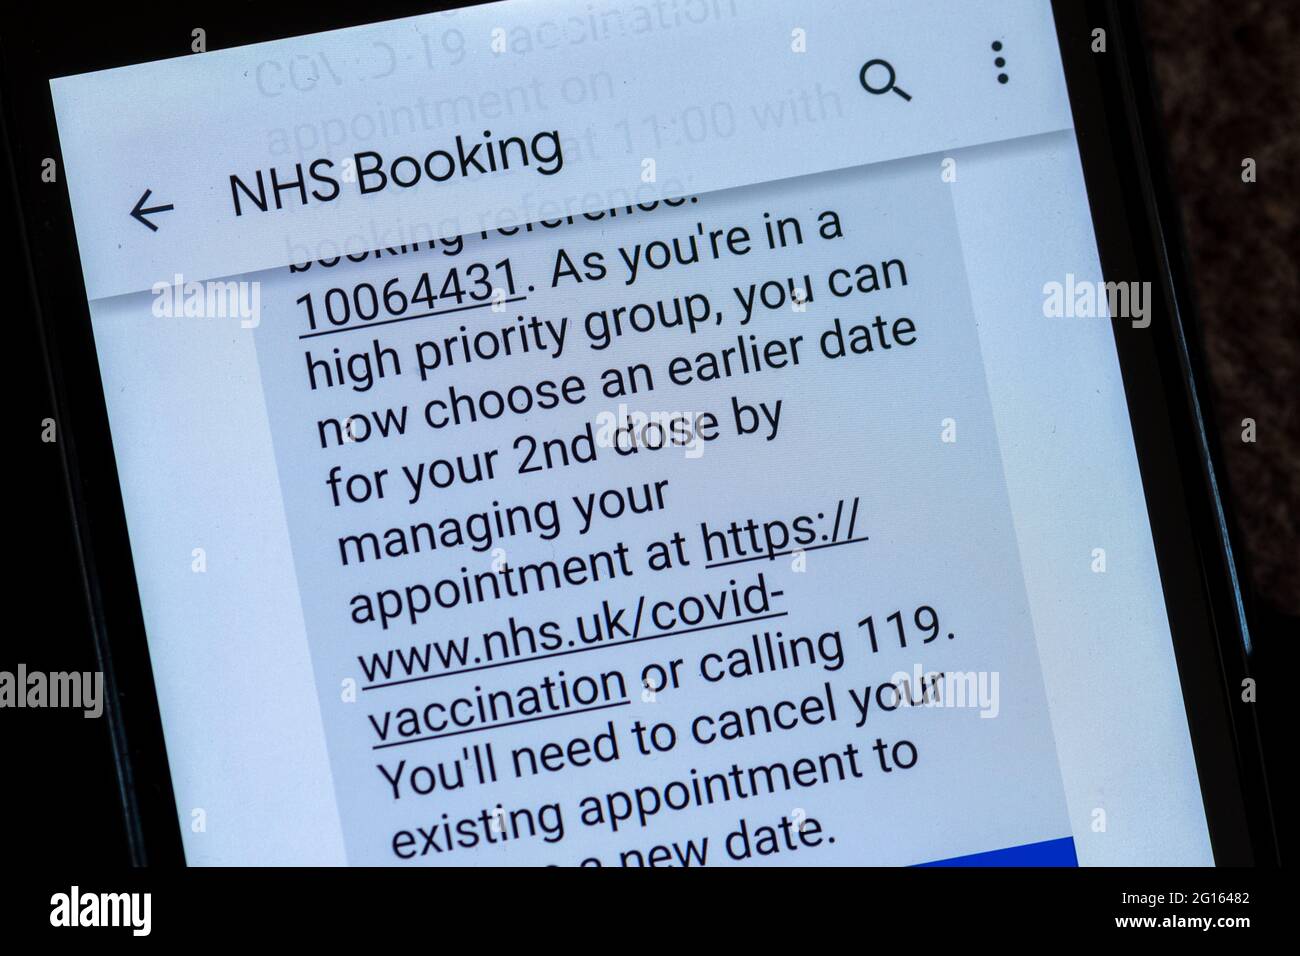 Textnachricht des NHS, in der empfohlen wird, einen früheren Termin für die 2. Kovidische Impfung wie in der Gruppe mit hoher Priorität (über 50 Jahre alt) zu buchen, Großbritannien, Juni 2021 Stockfoto